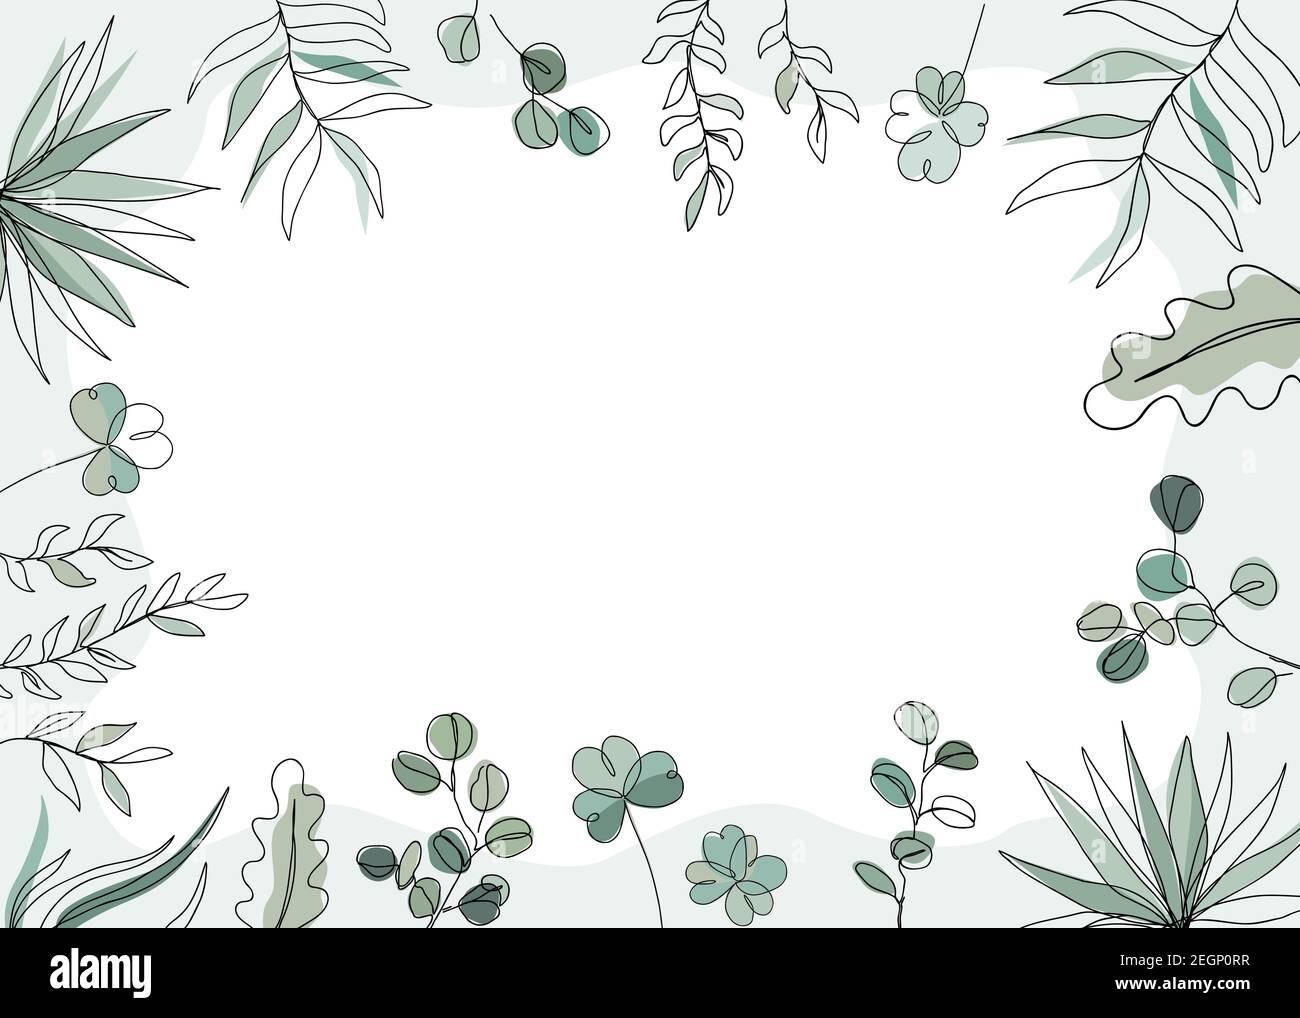 Illustrazione vettoriale floreale in stile di disegno a linea continua alla moda. Piante e foglie sfondo cornice con spazio di copia per il testo Illustrazione Vettoriale